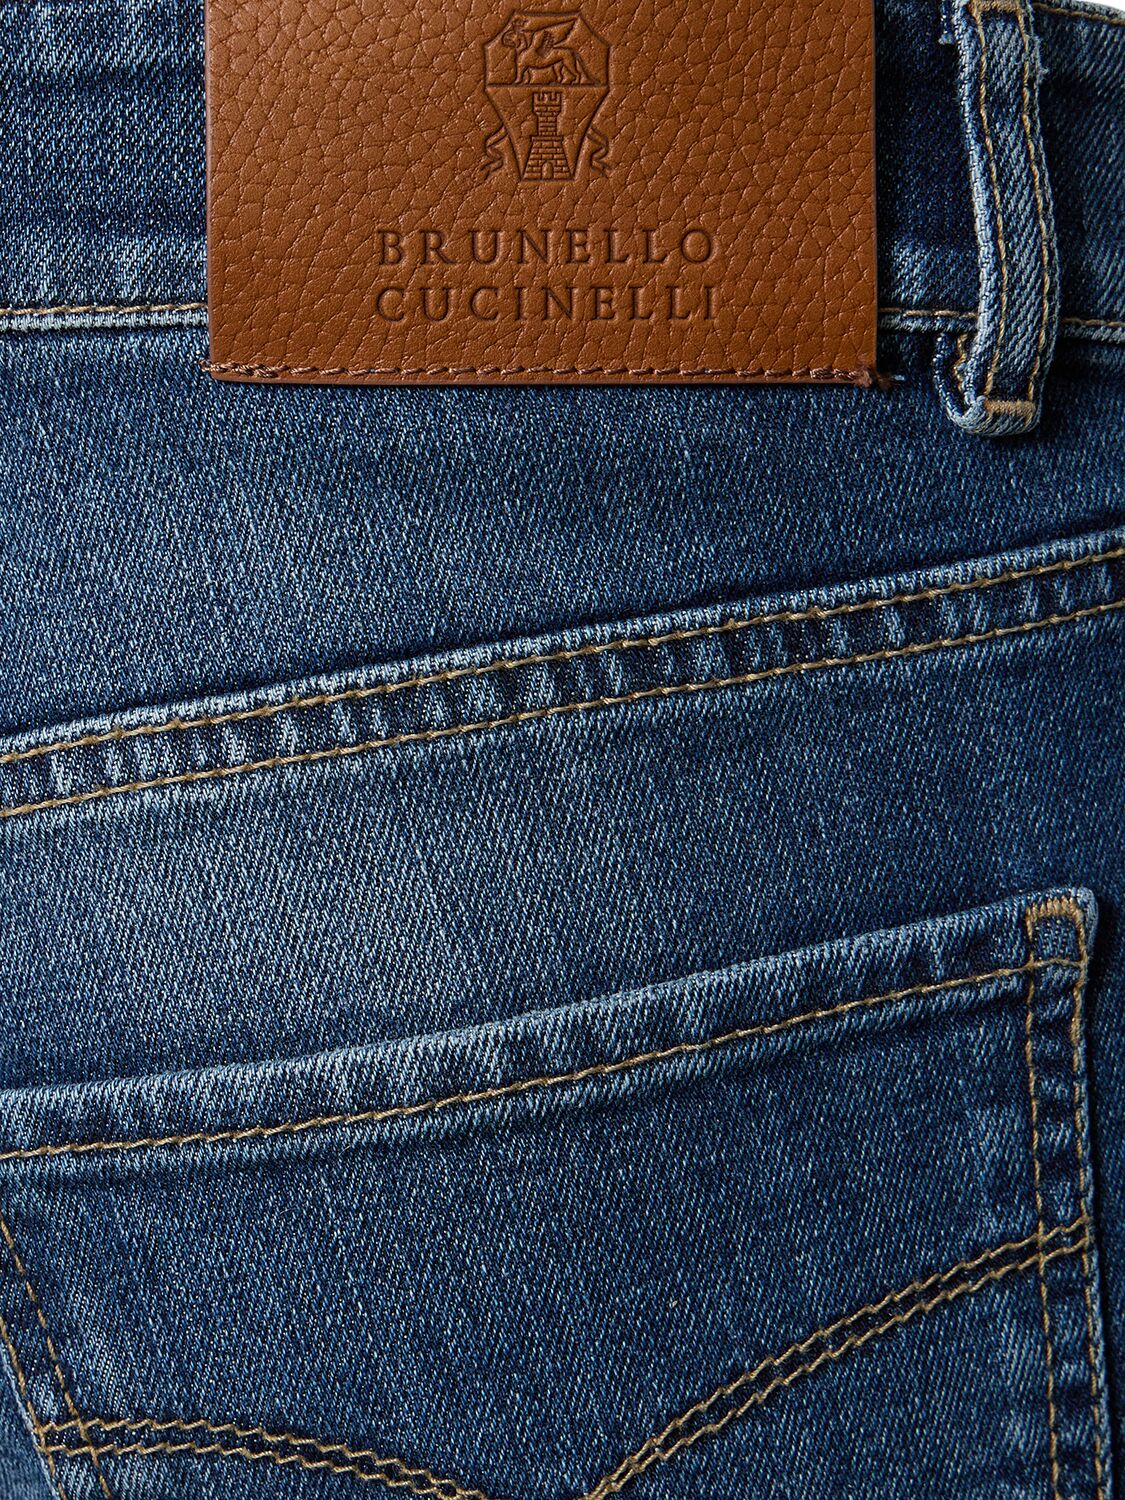 Shop Brunello Cucinelli Stonewashed Cotton Denim Jeans In Medium Wash